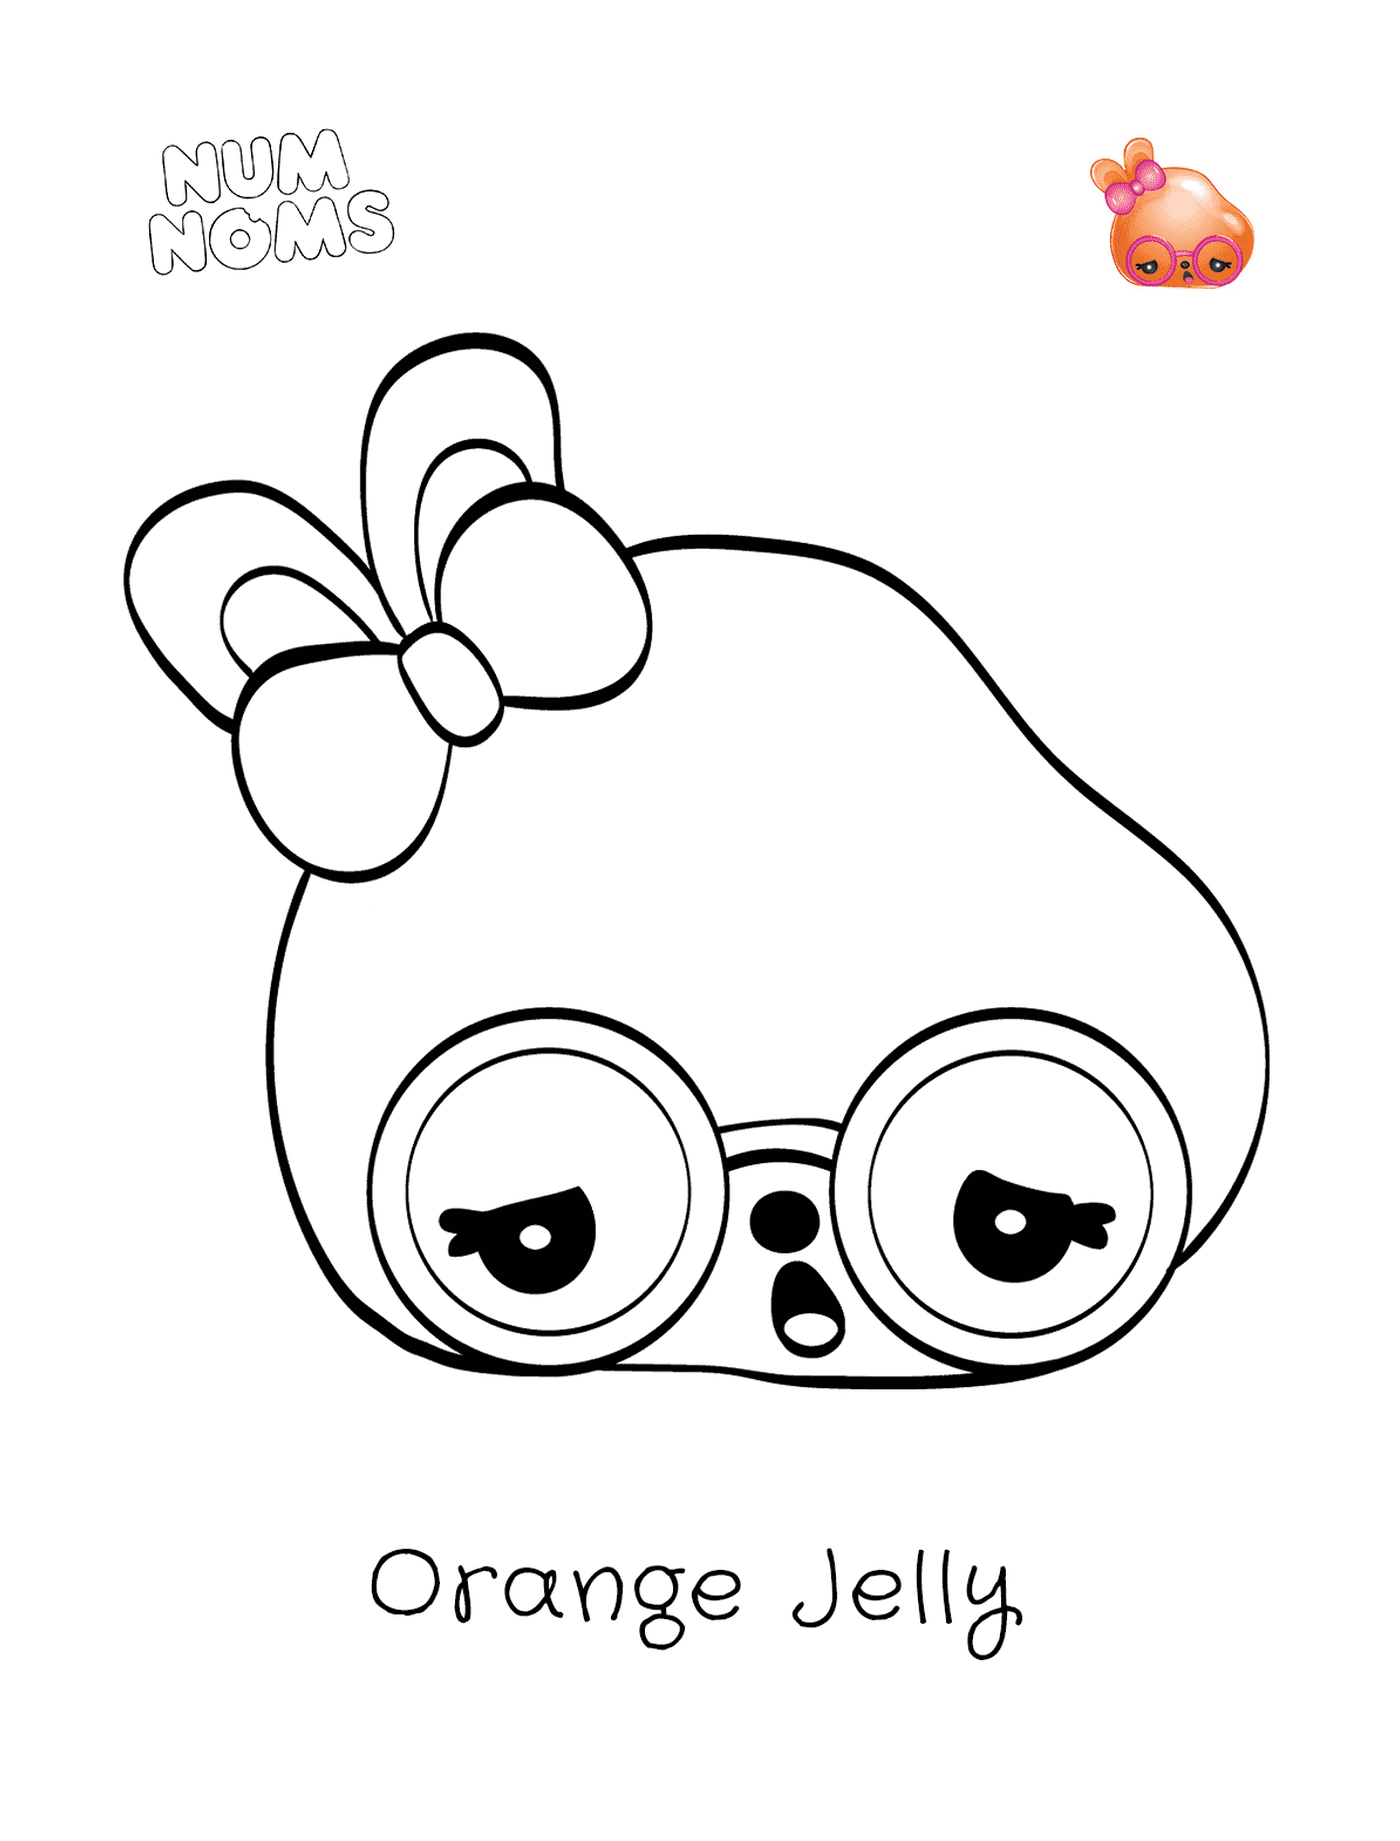  جيلي برتقال، شخصية مضحكة 